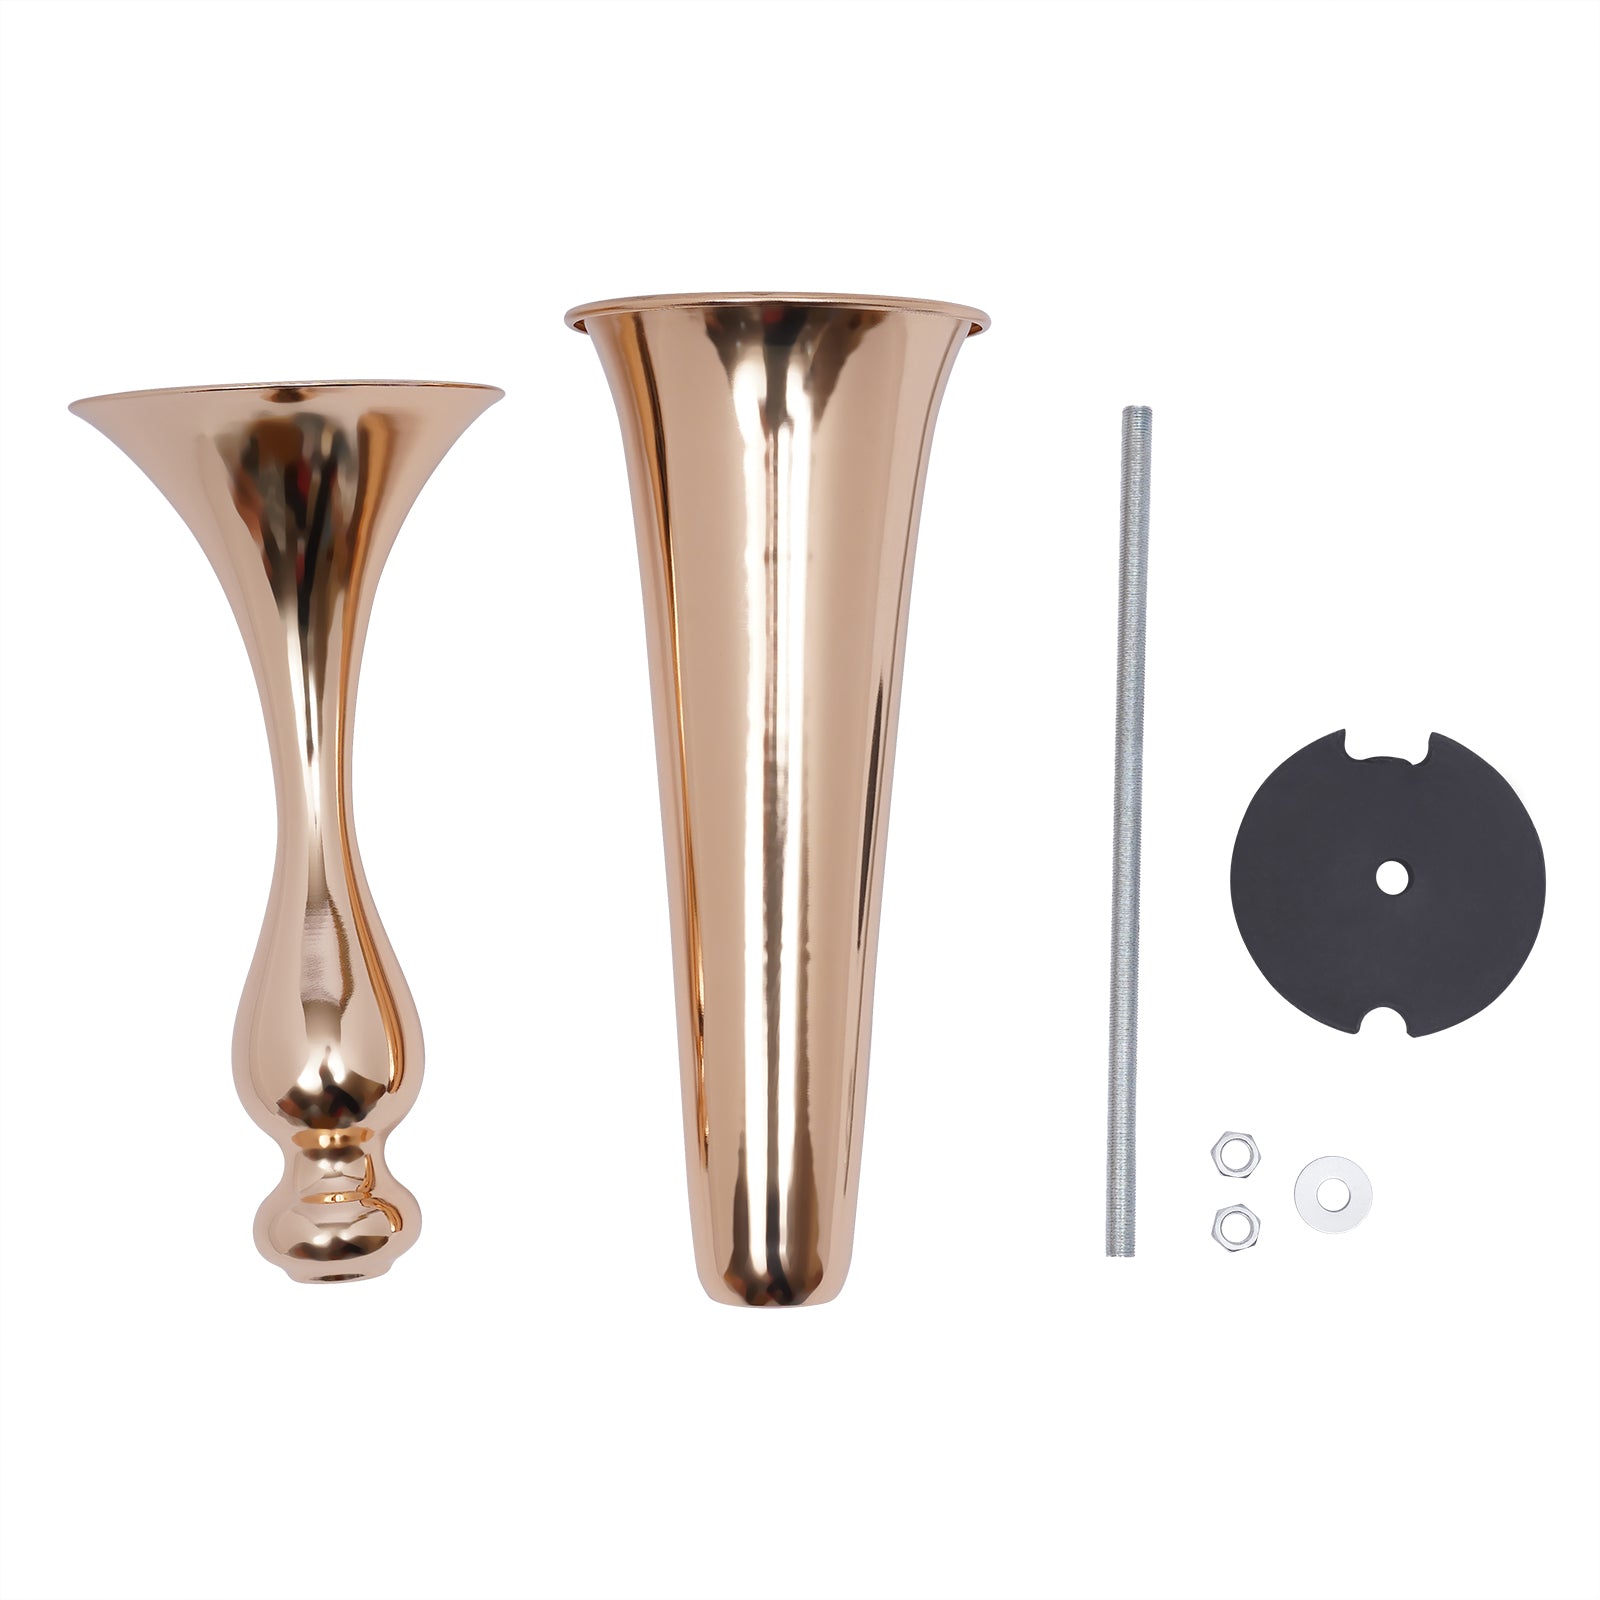 6 vasi a tromba in metallo alto 56,5 cm, in metallo, per Decorazione, Centrotavola, Matrimonio, Cena, Festa di Natale